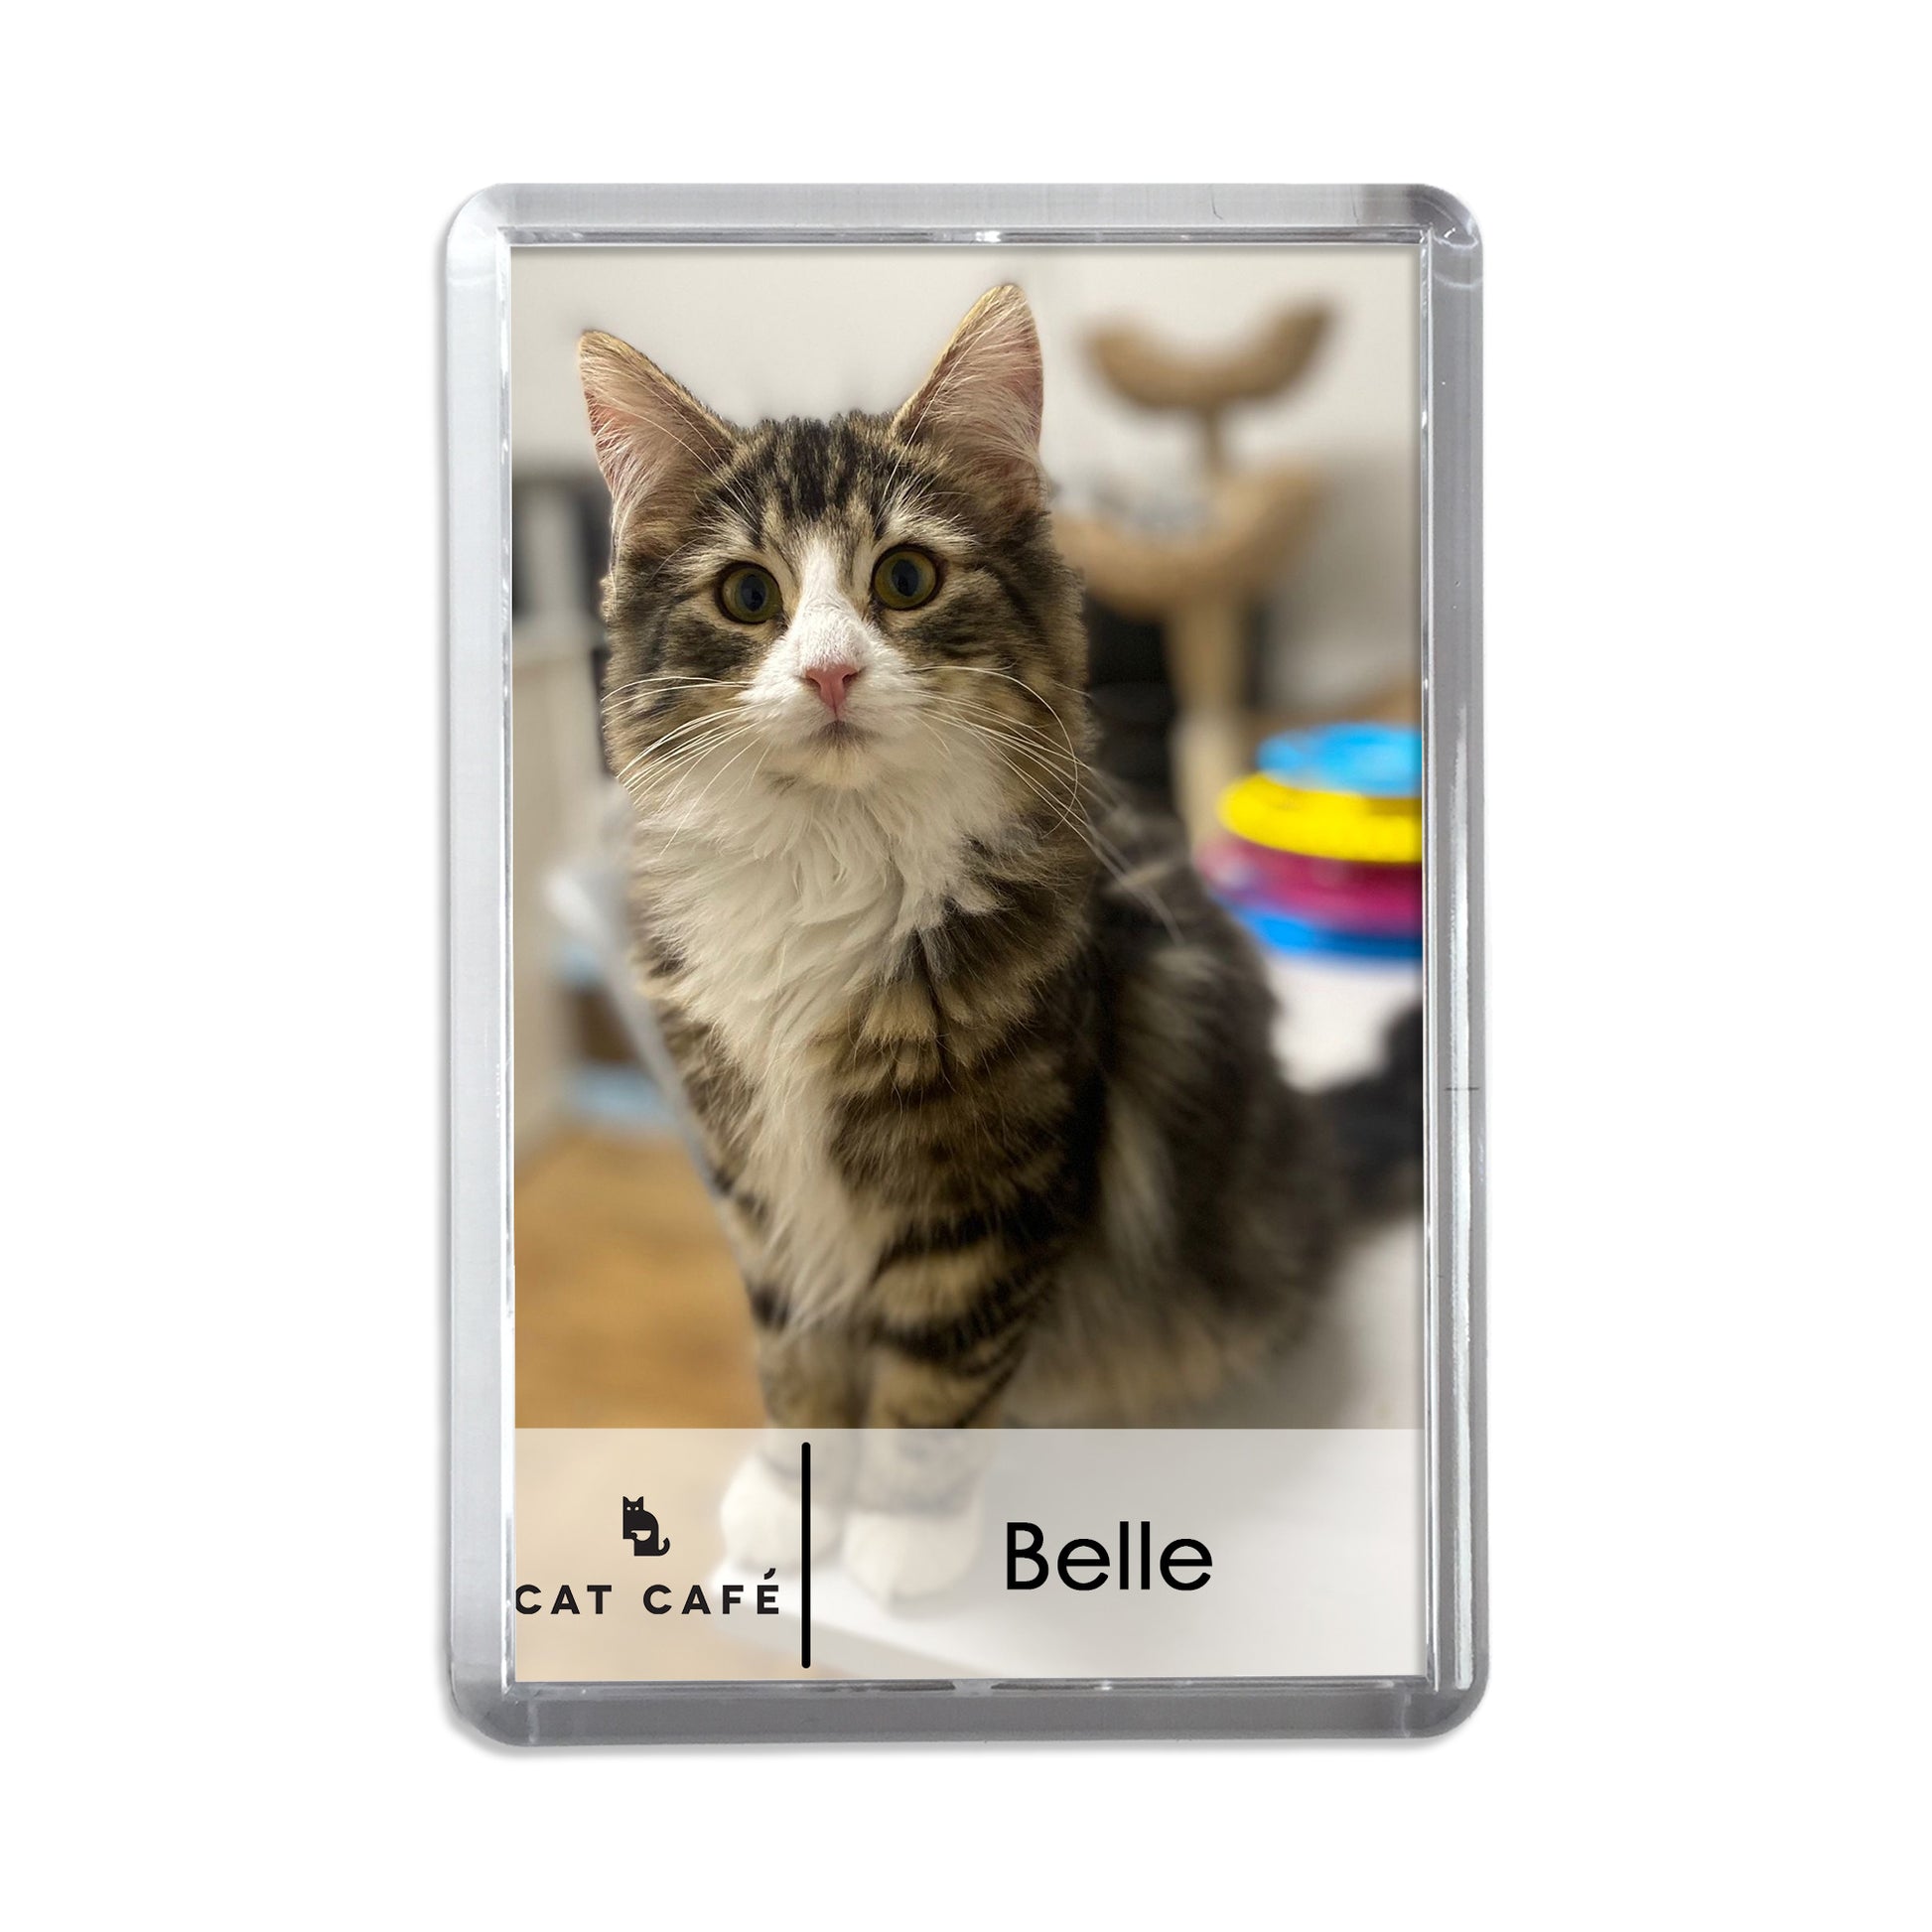 Cat Cafe Liverpool Magnet - Belle